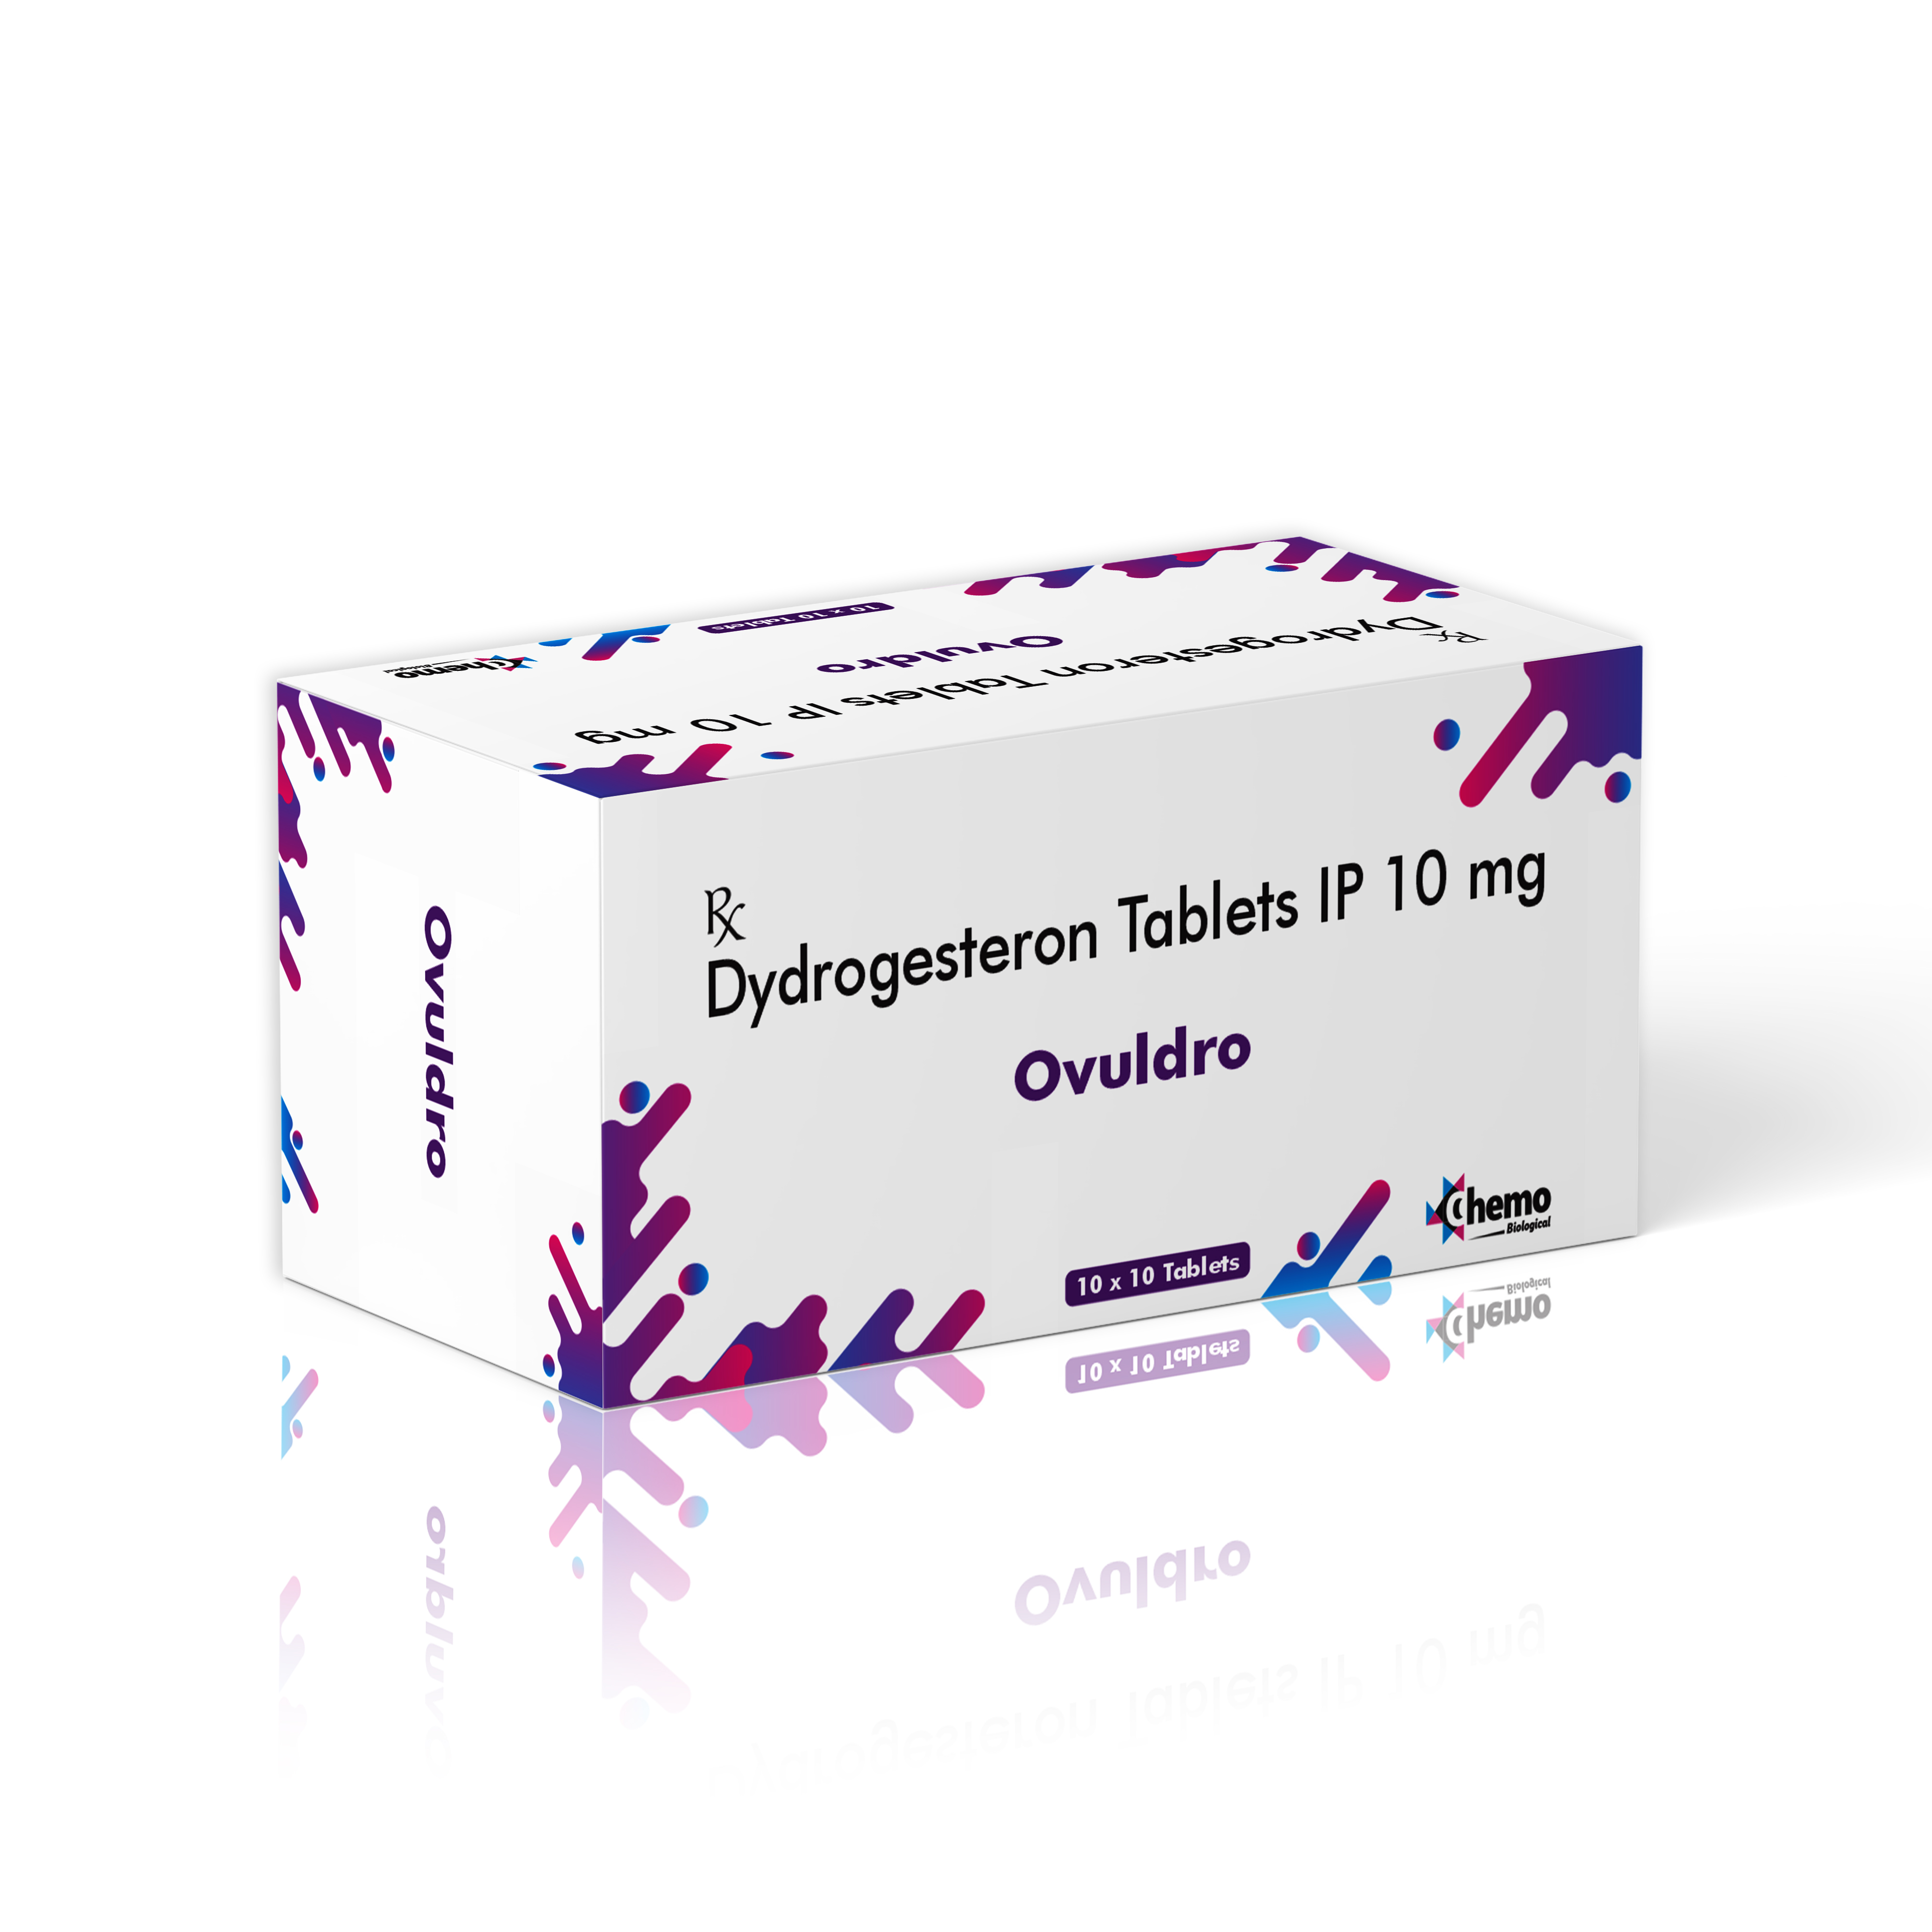 dydrogesterone 10mg